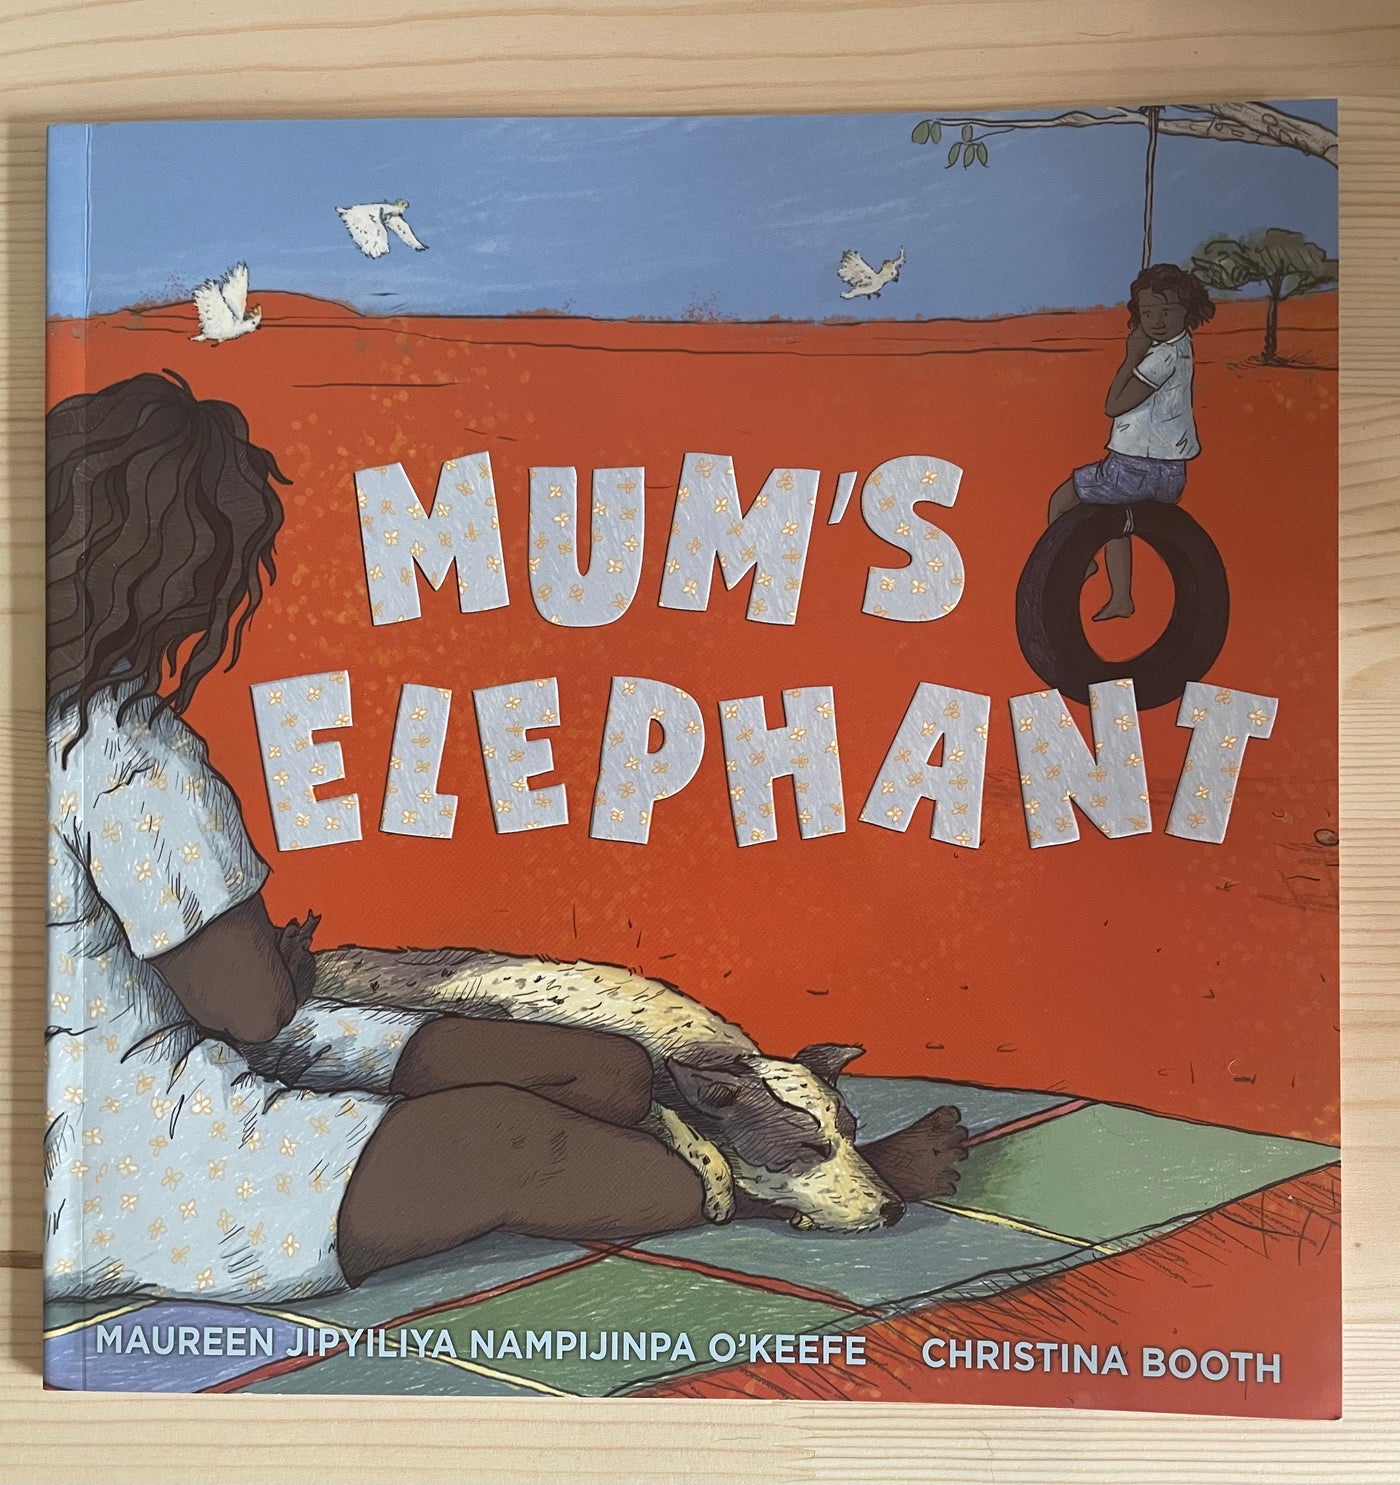 Mum's Elephant- Maureen Jipiyiliya Nampijinpa O'Keefe